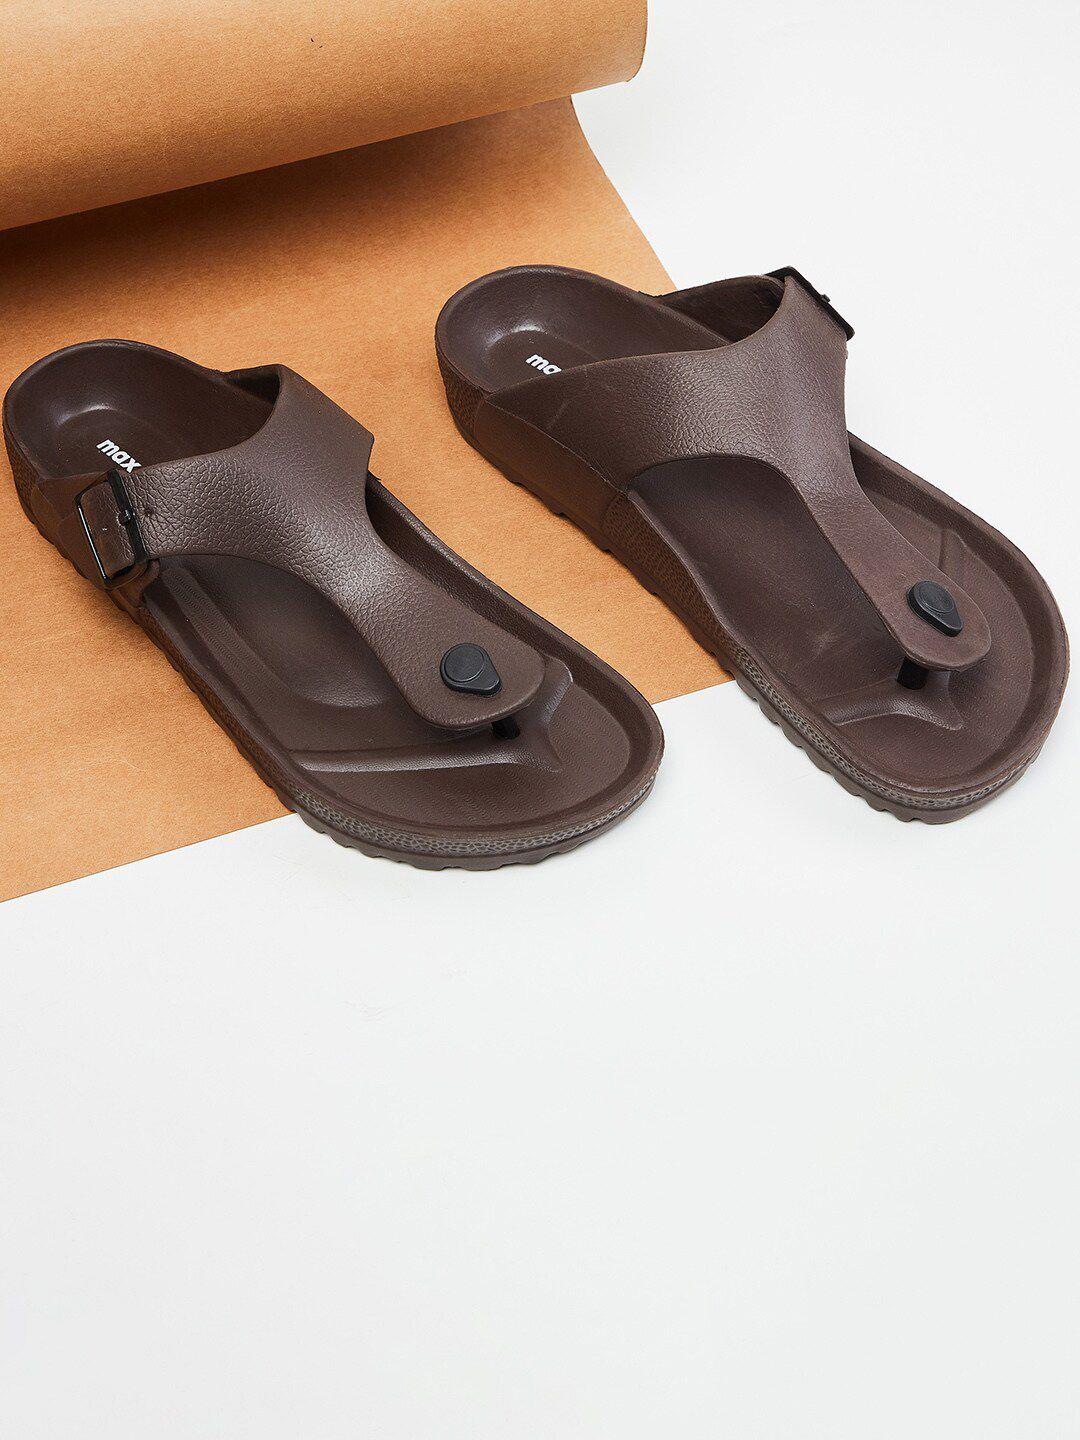 max men brown comfort sandals